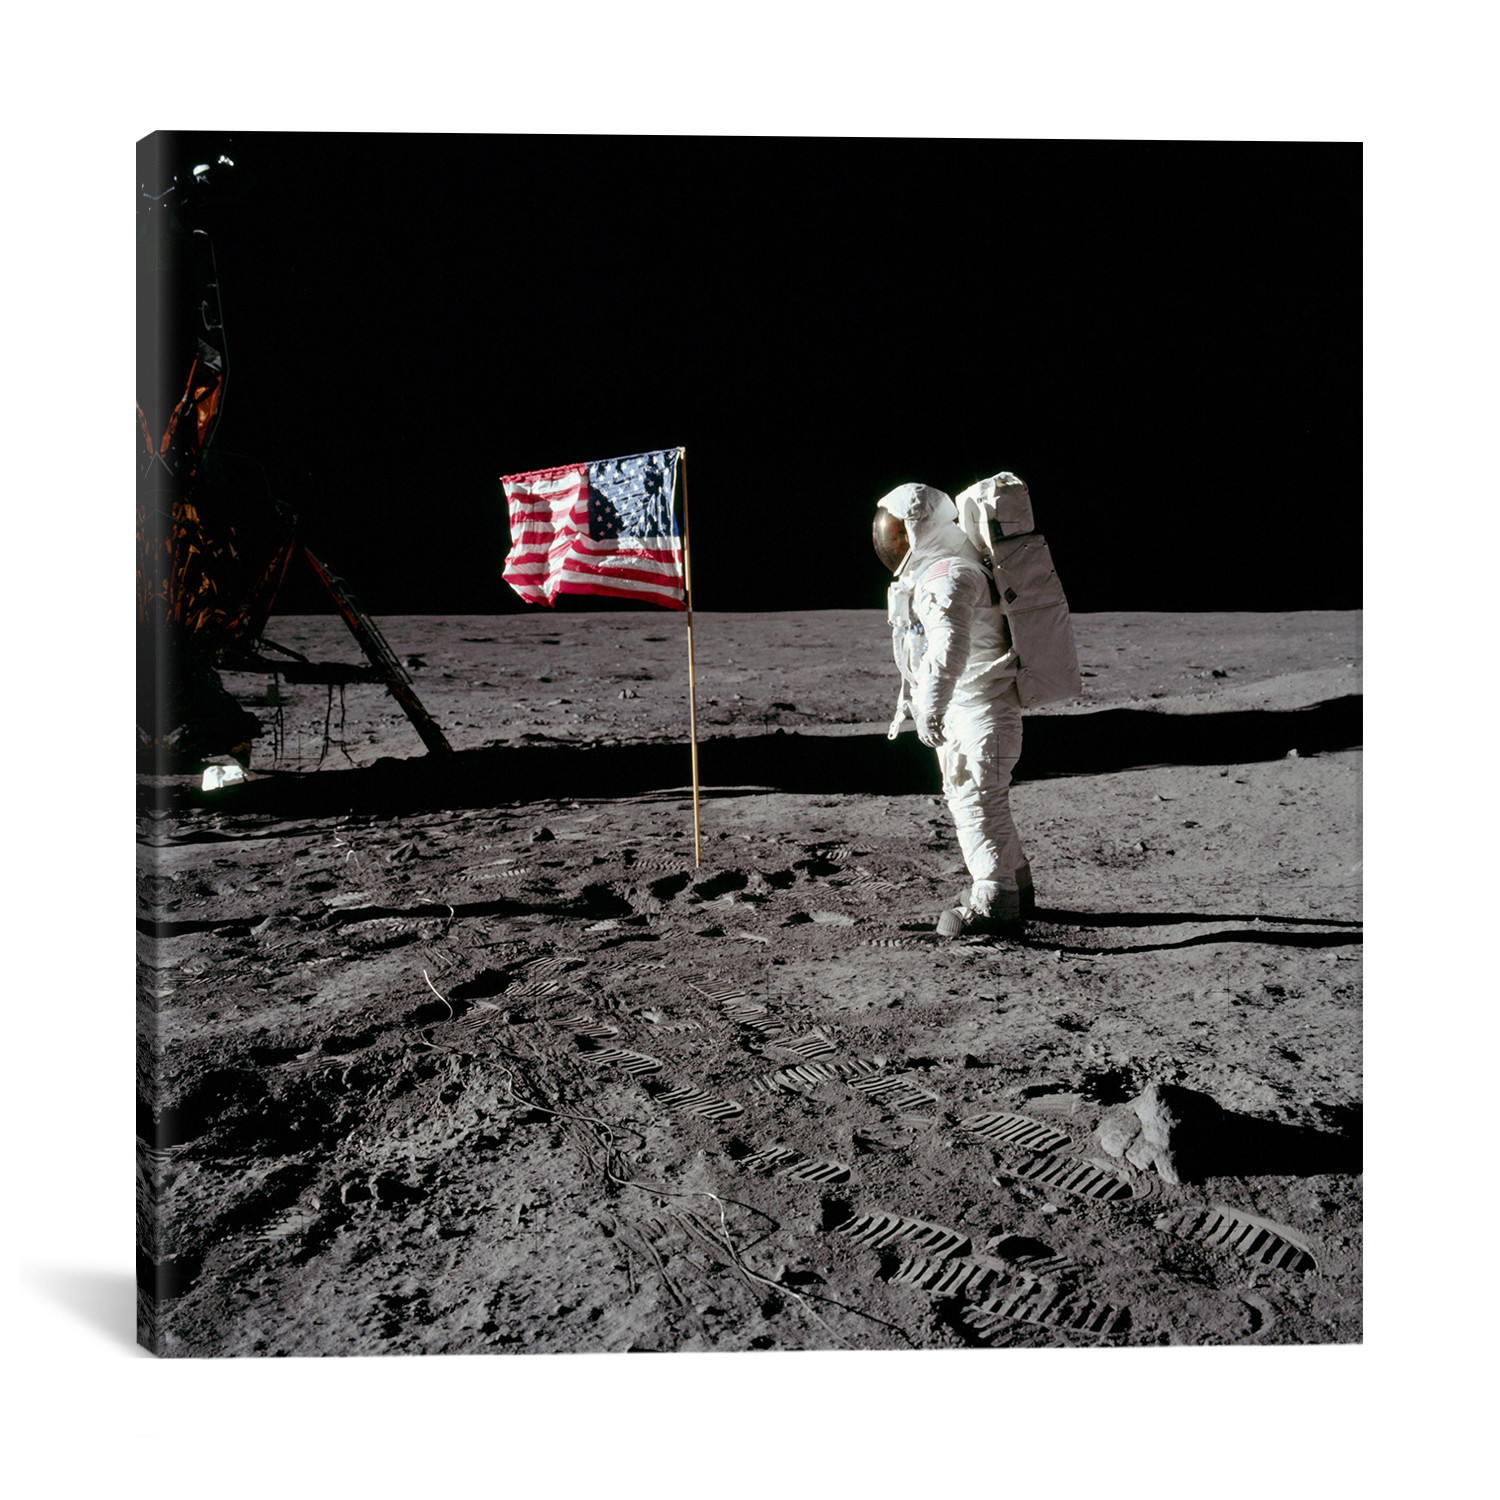 Первая высадка на луну фото. Первый человек на Луне фото. Хлопок вырос на Луне. Почему американский флаг развевается на Луне. First land on the moon